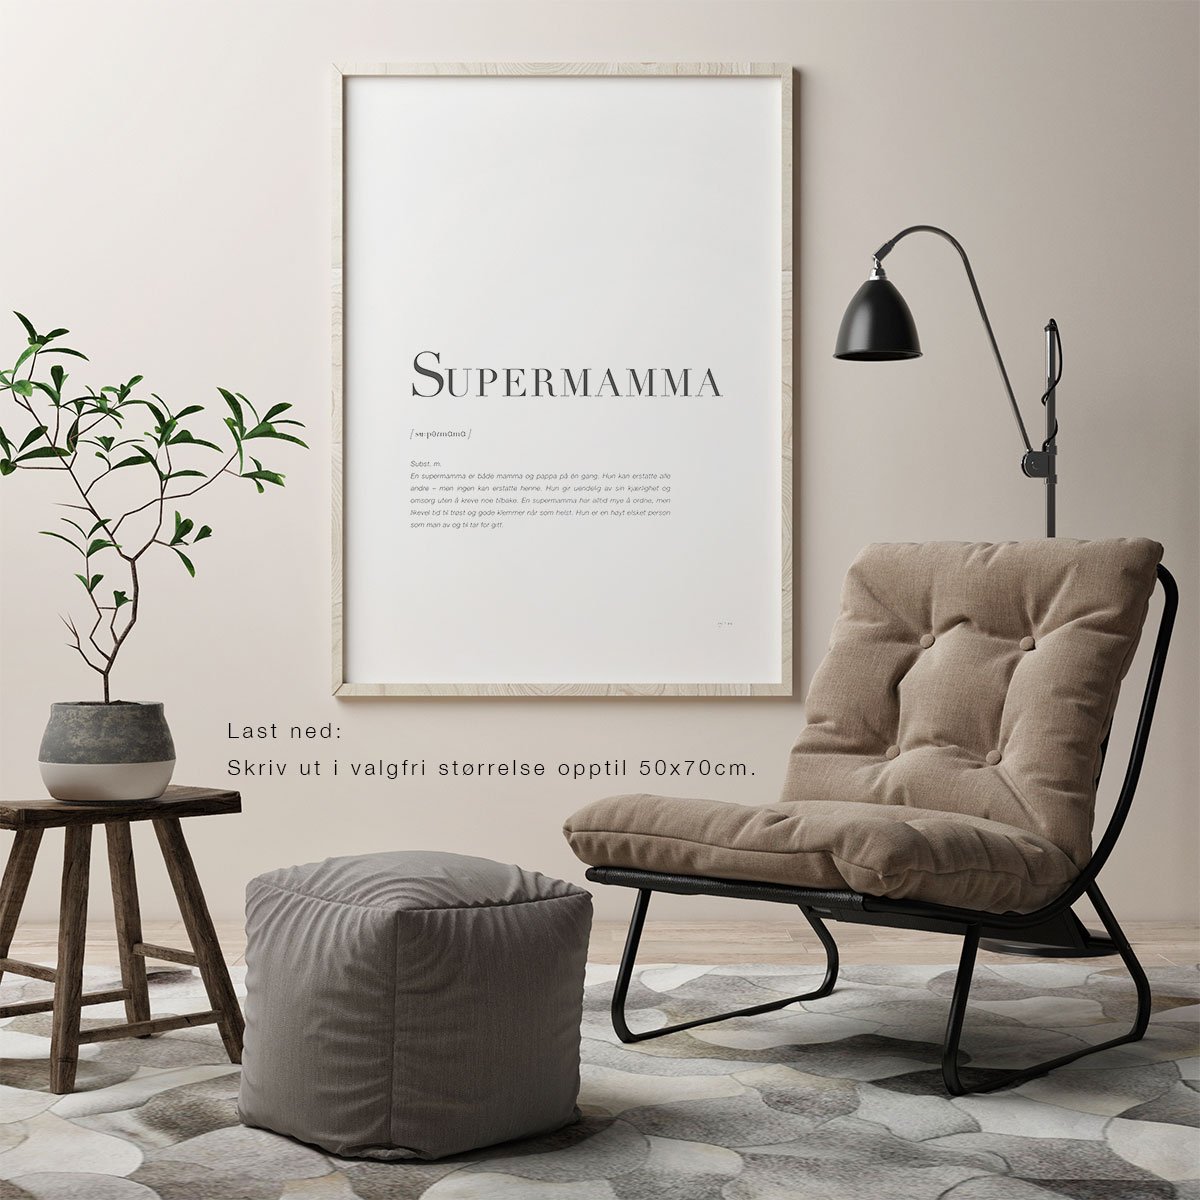 SUPERMAMMA-Last ned